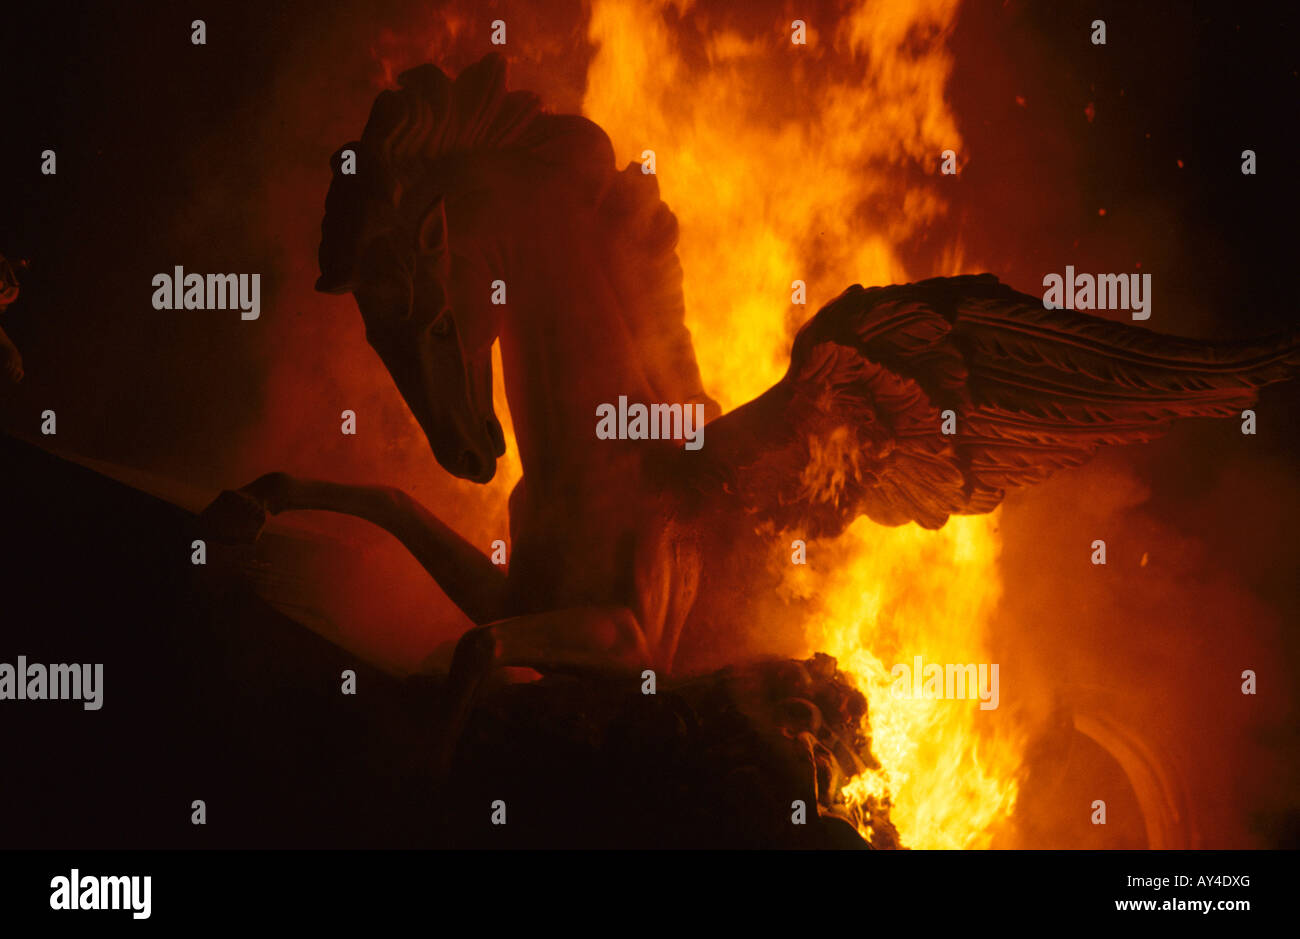 phantasy dream horse on fire Stock Photo